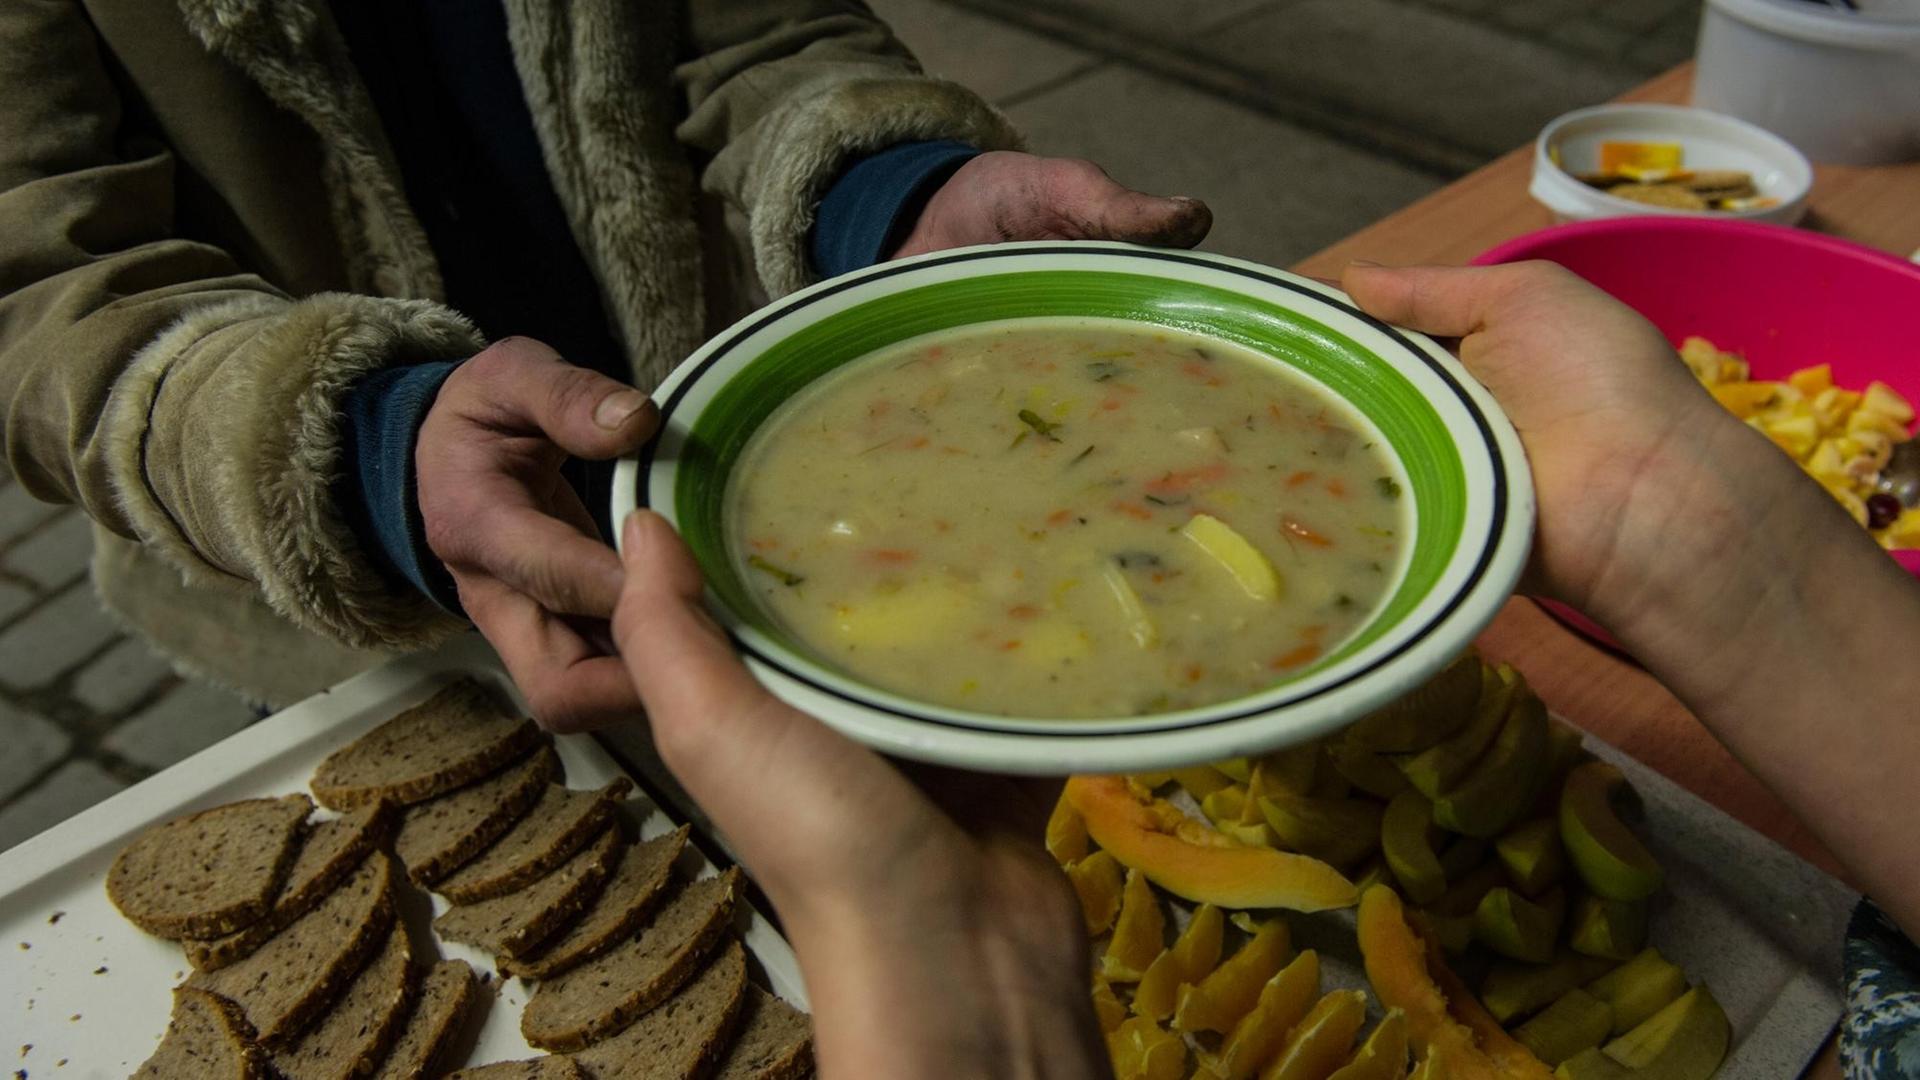 Ein Obdachloser bekommt am 19.02.2014 in Berlin eine Suppe in einer Wärmelufthalle. Die Berliner Stadtmission hat das provisorisch errichtete Gebäude als Nachtquartier für Obdachlose unweit des Innsbrucker Platzes vorgesehen.